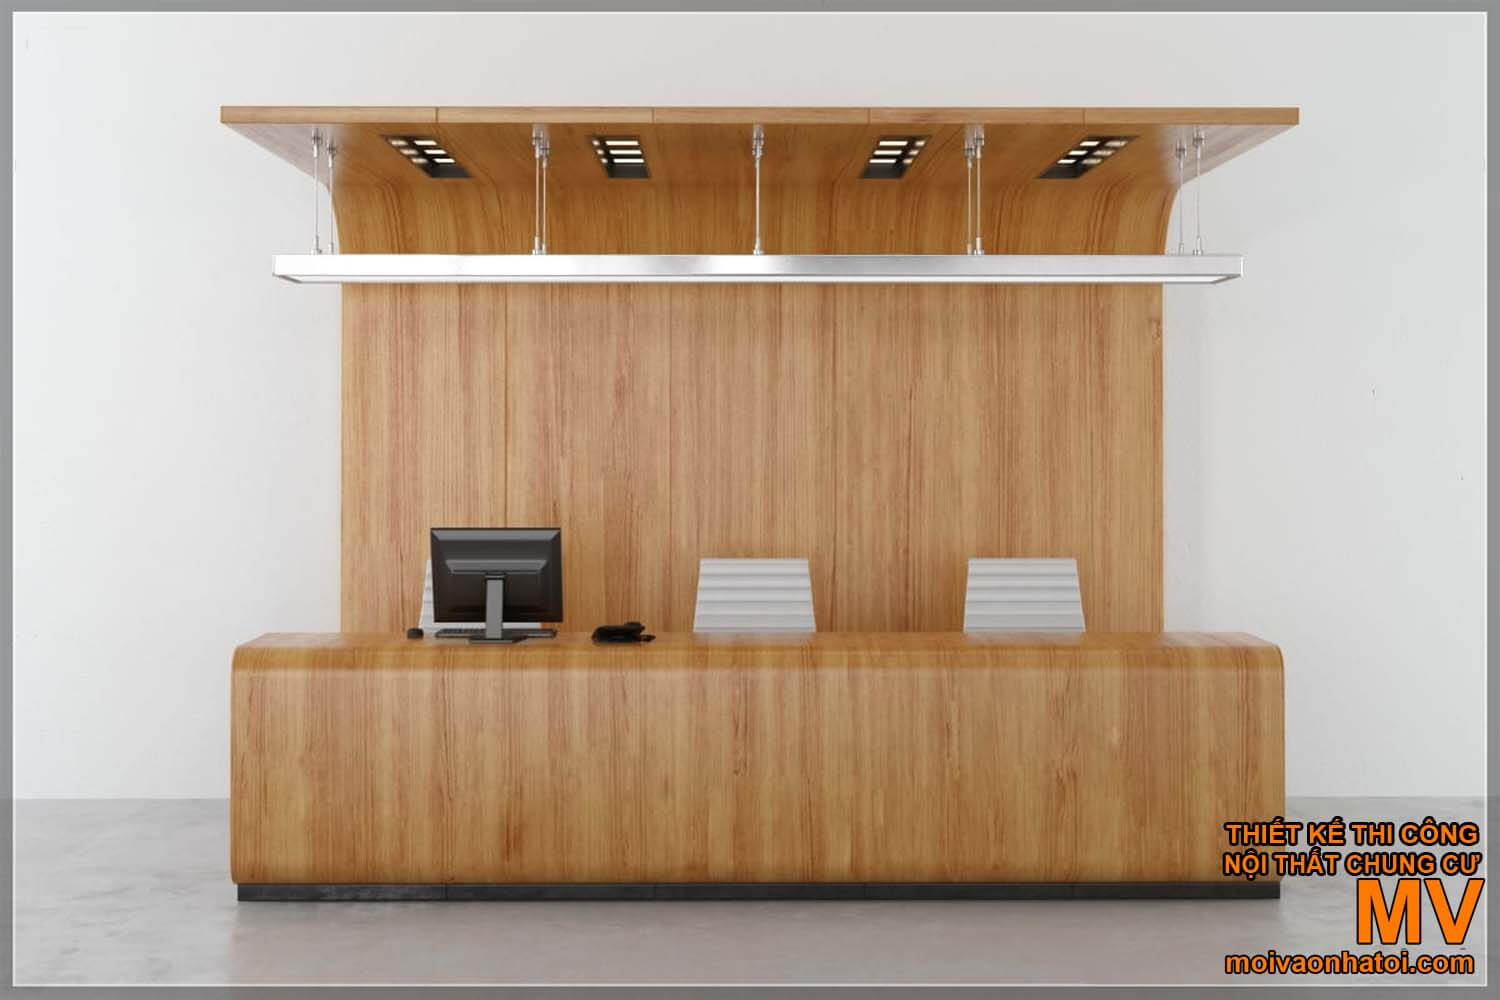 बार डिजाइन - लकड़ी का स्वागत डेस्क